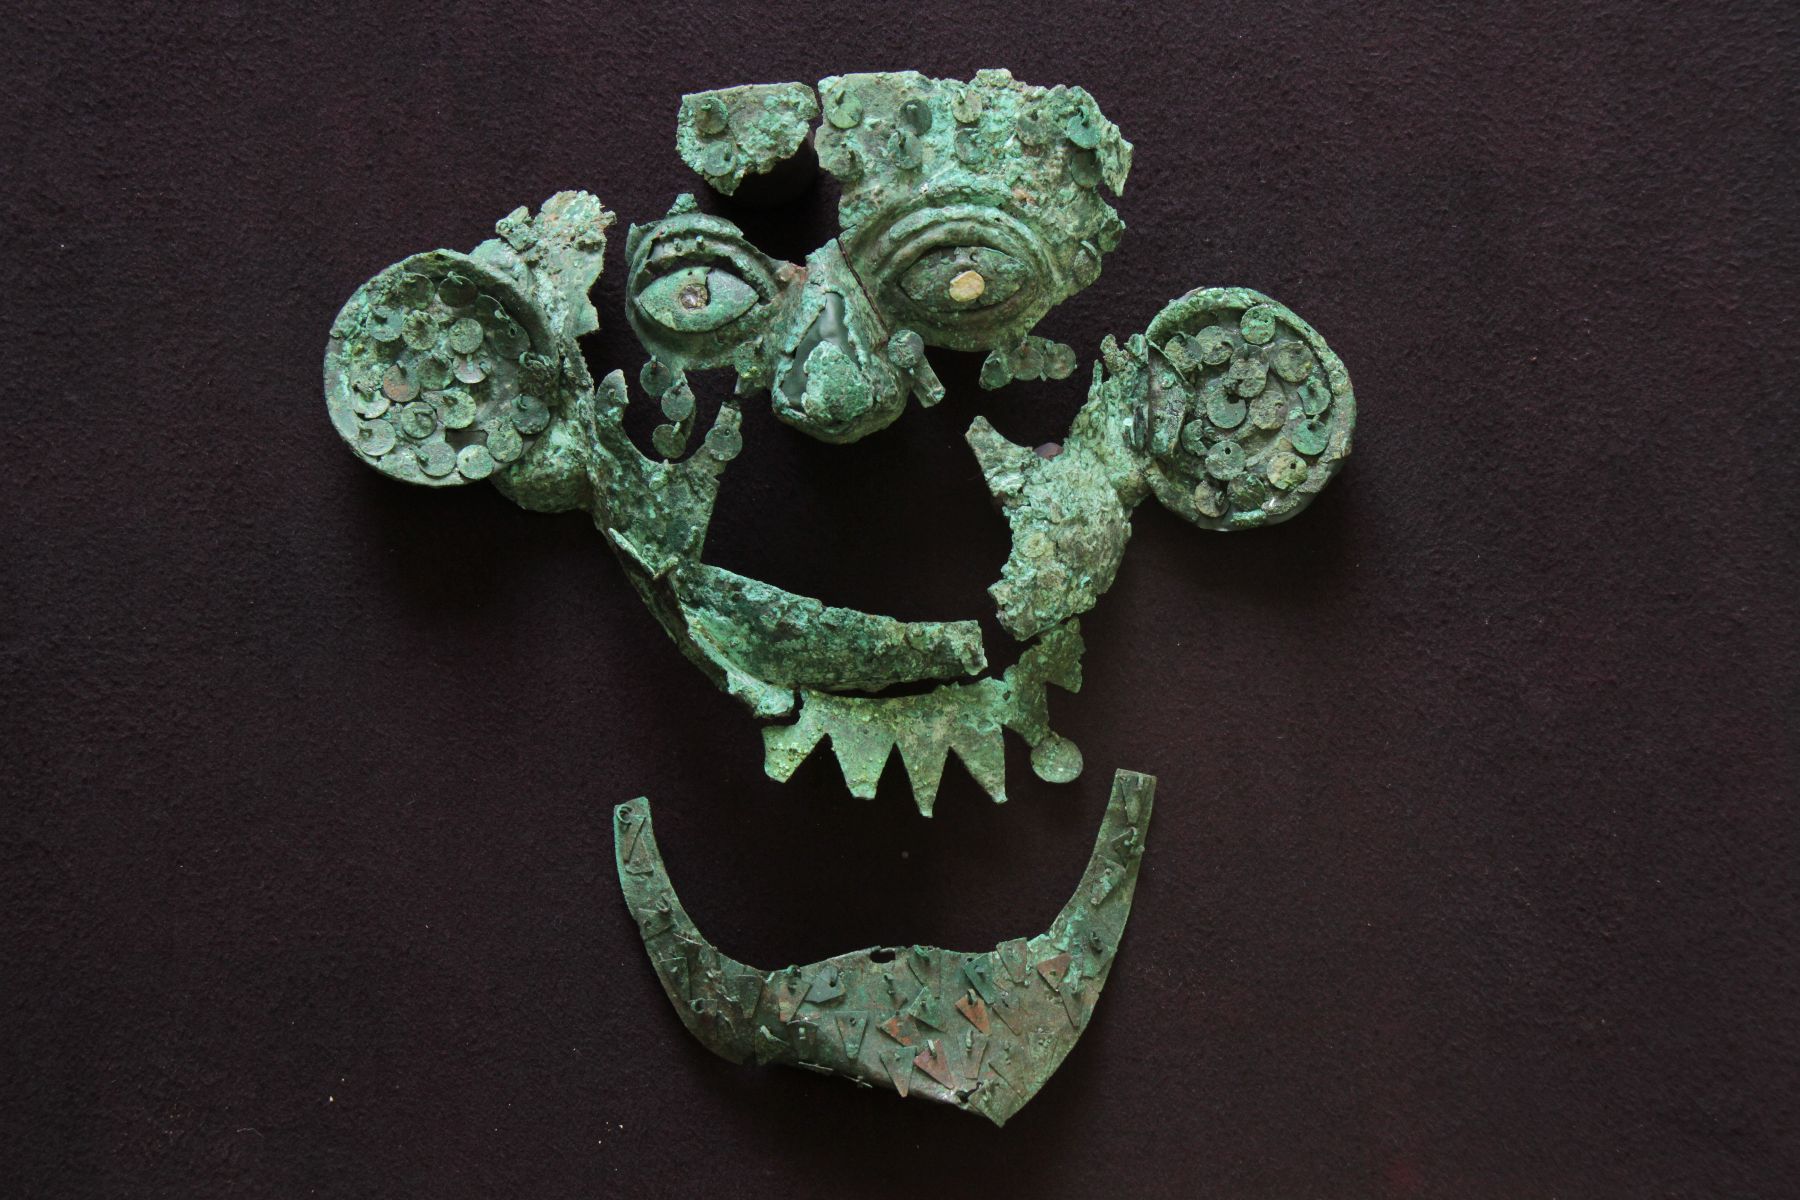 Máscara hallada en el contexto funerario Nº 16  del guerrero del pututo, en el complejo arqueológico de Sipán.